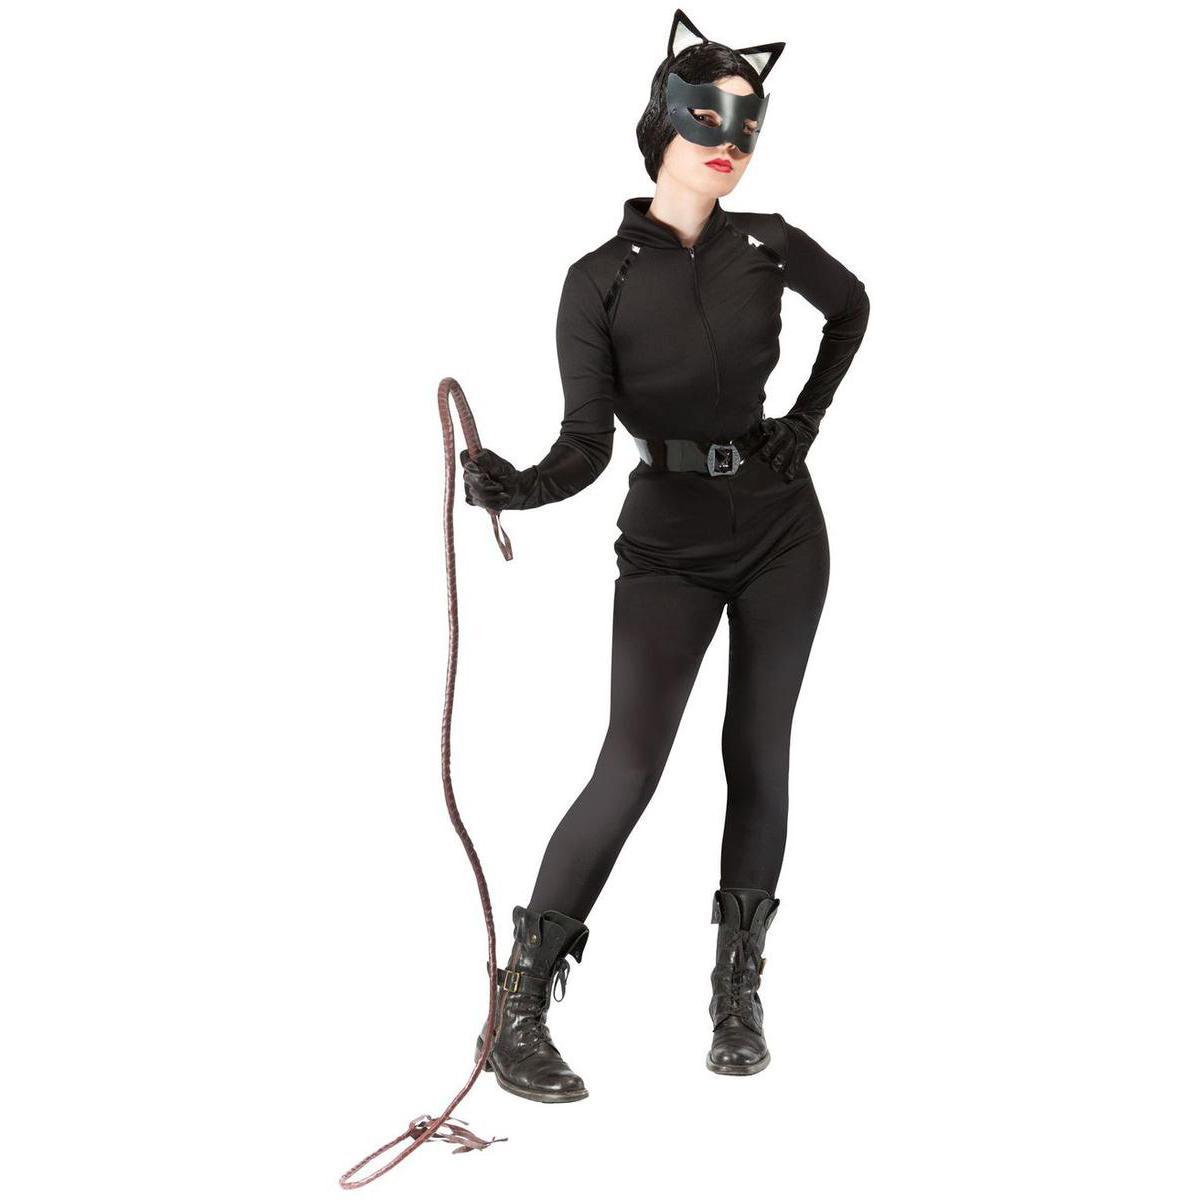 Costume adulte de femme chat en polyester - Taille unique - Noir